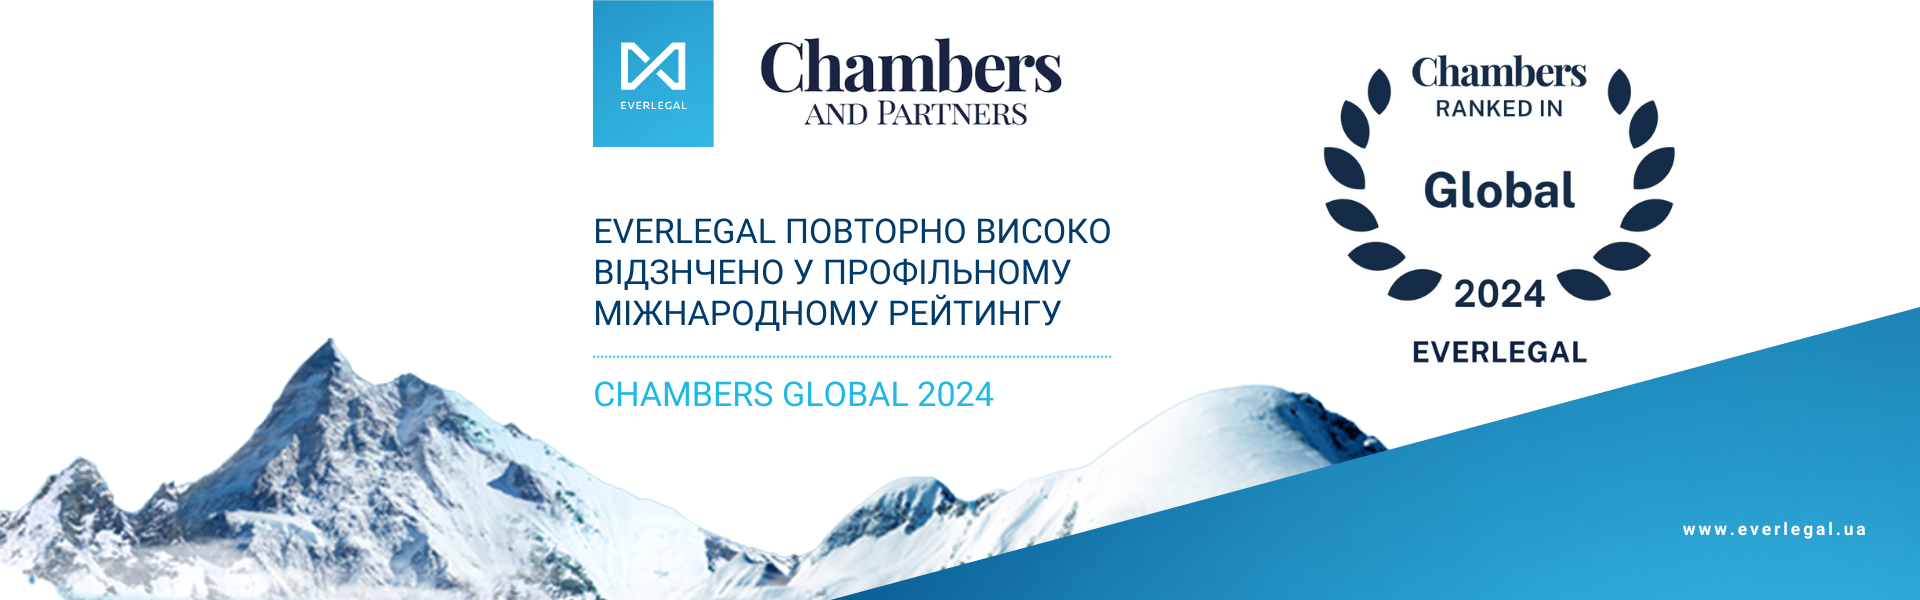 EVERLEGAL повторно високо відзначено у міжнародному рейтингу Chambers Global 2024